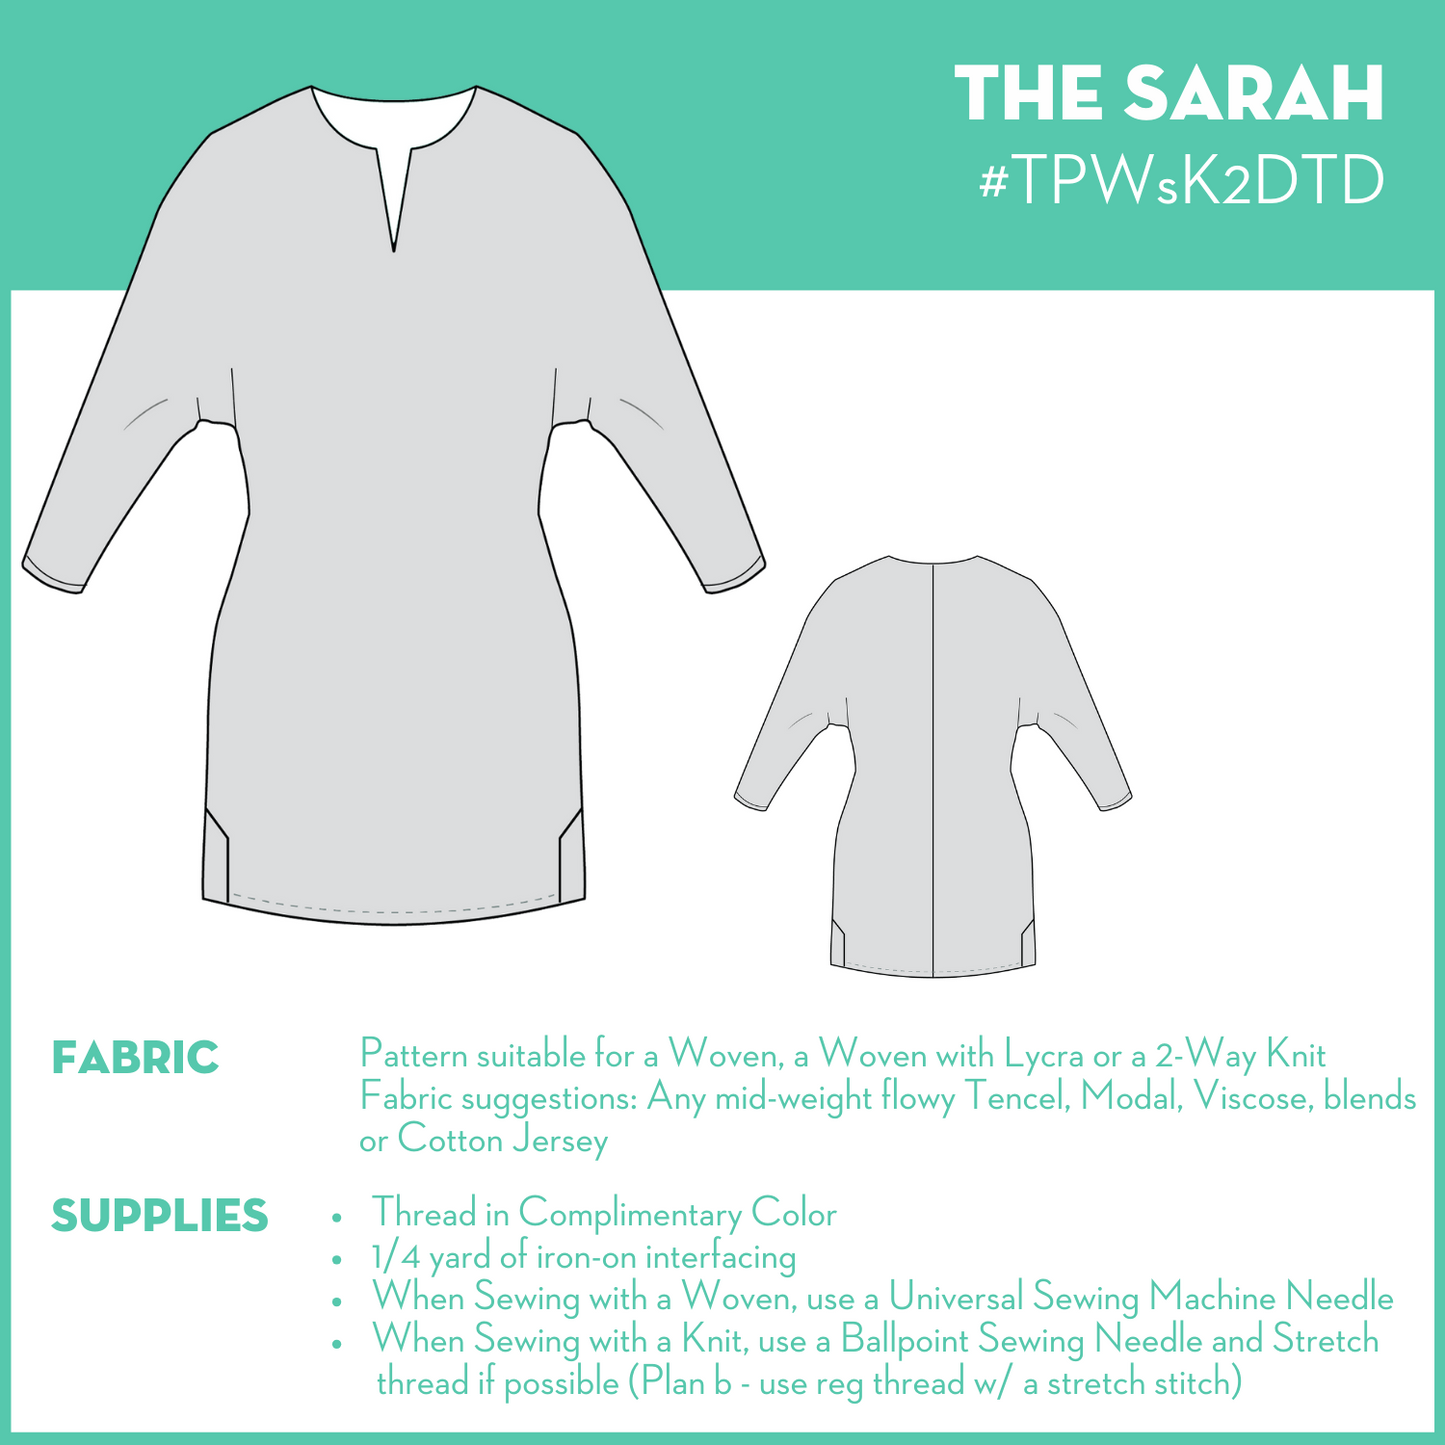 The Sarah